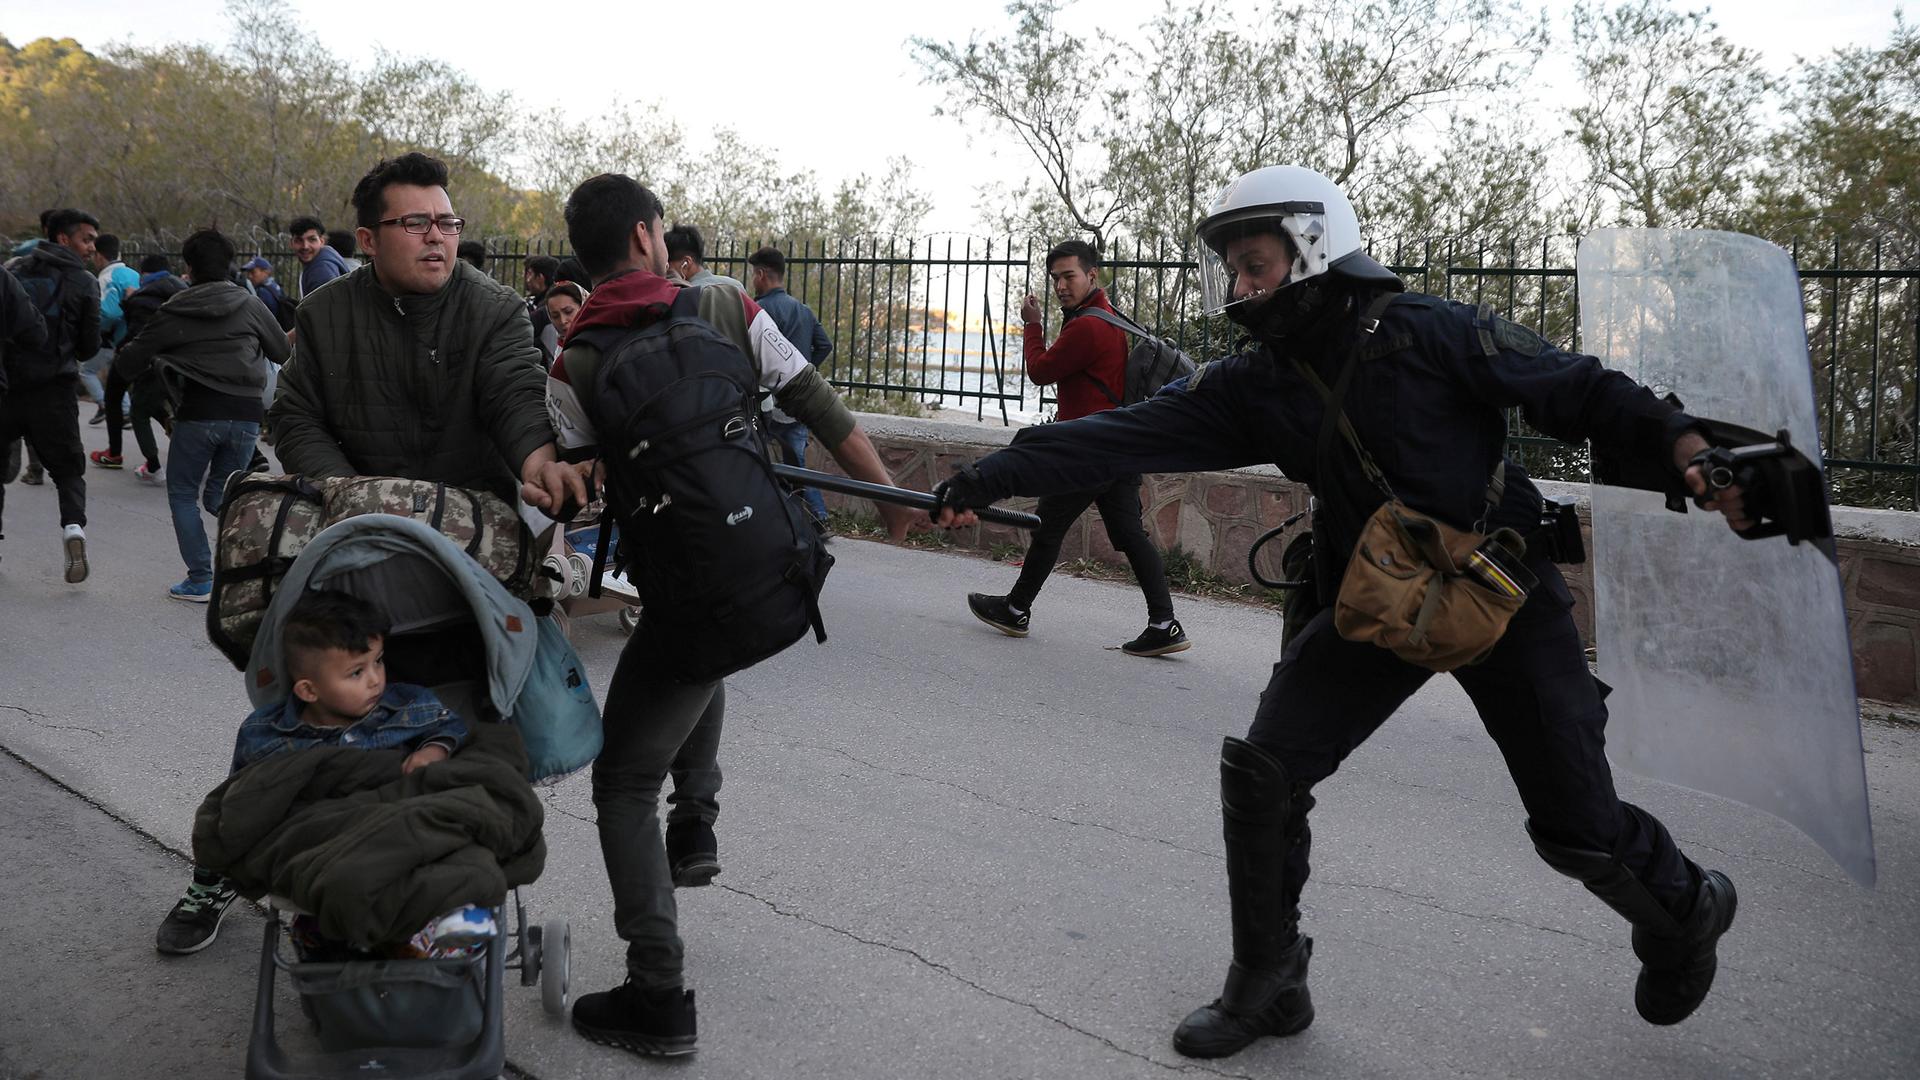 Европа нападение. Полиция против мигрантов. Украинские мигранты. Русские против мигрантов.